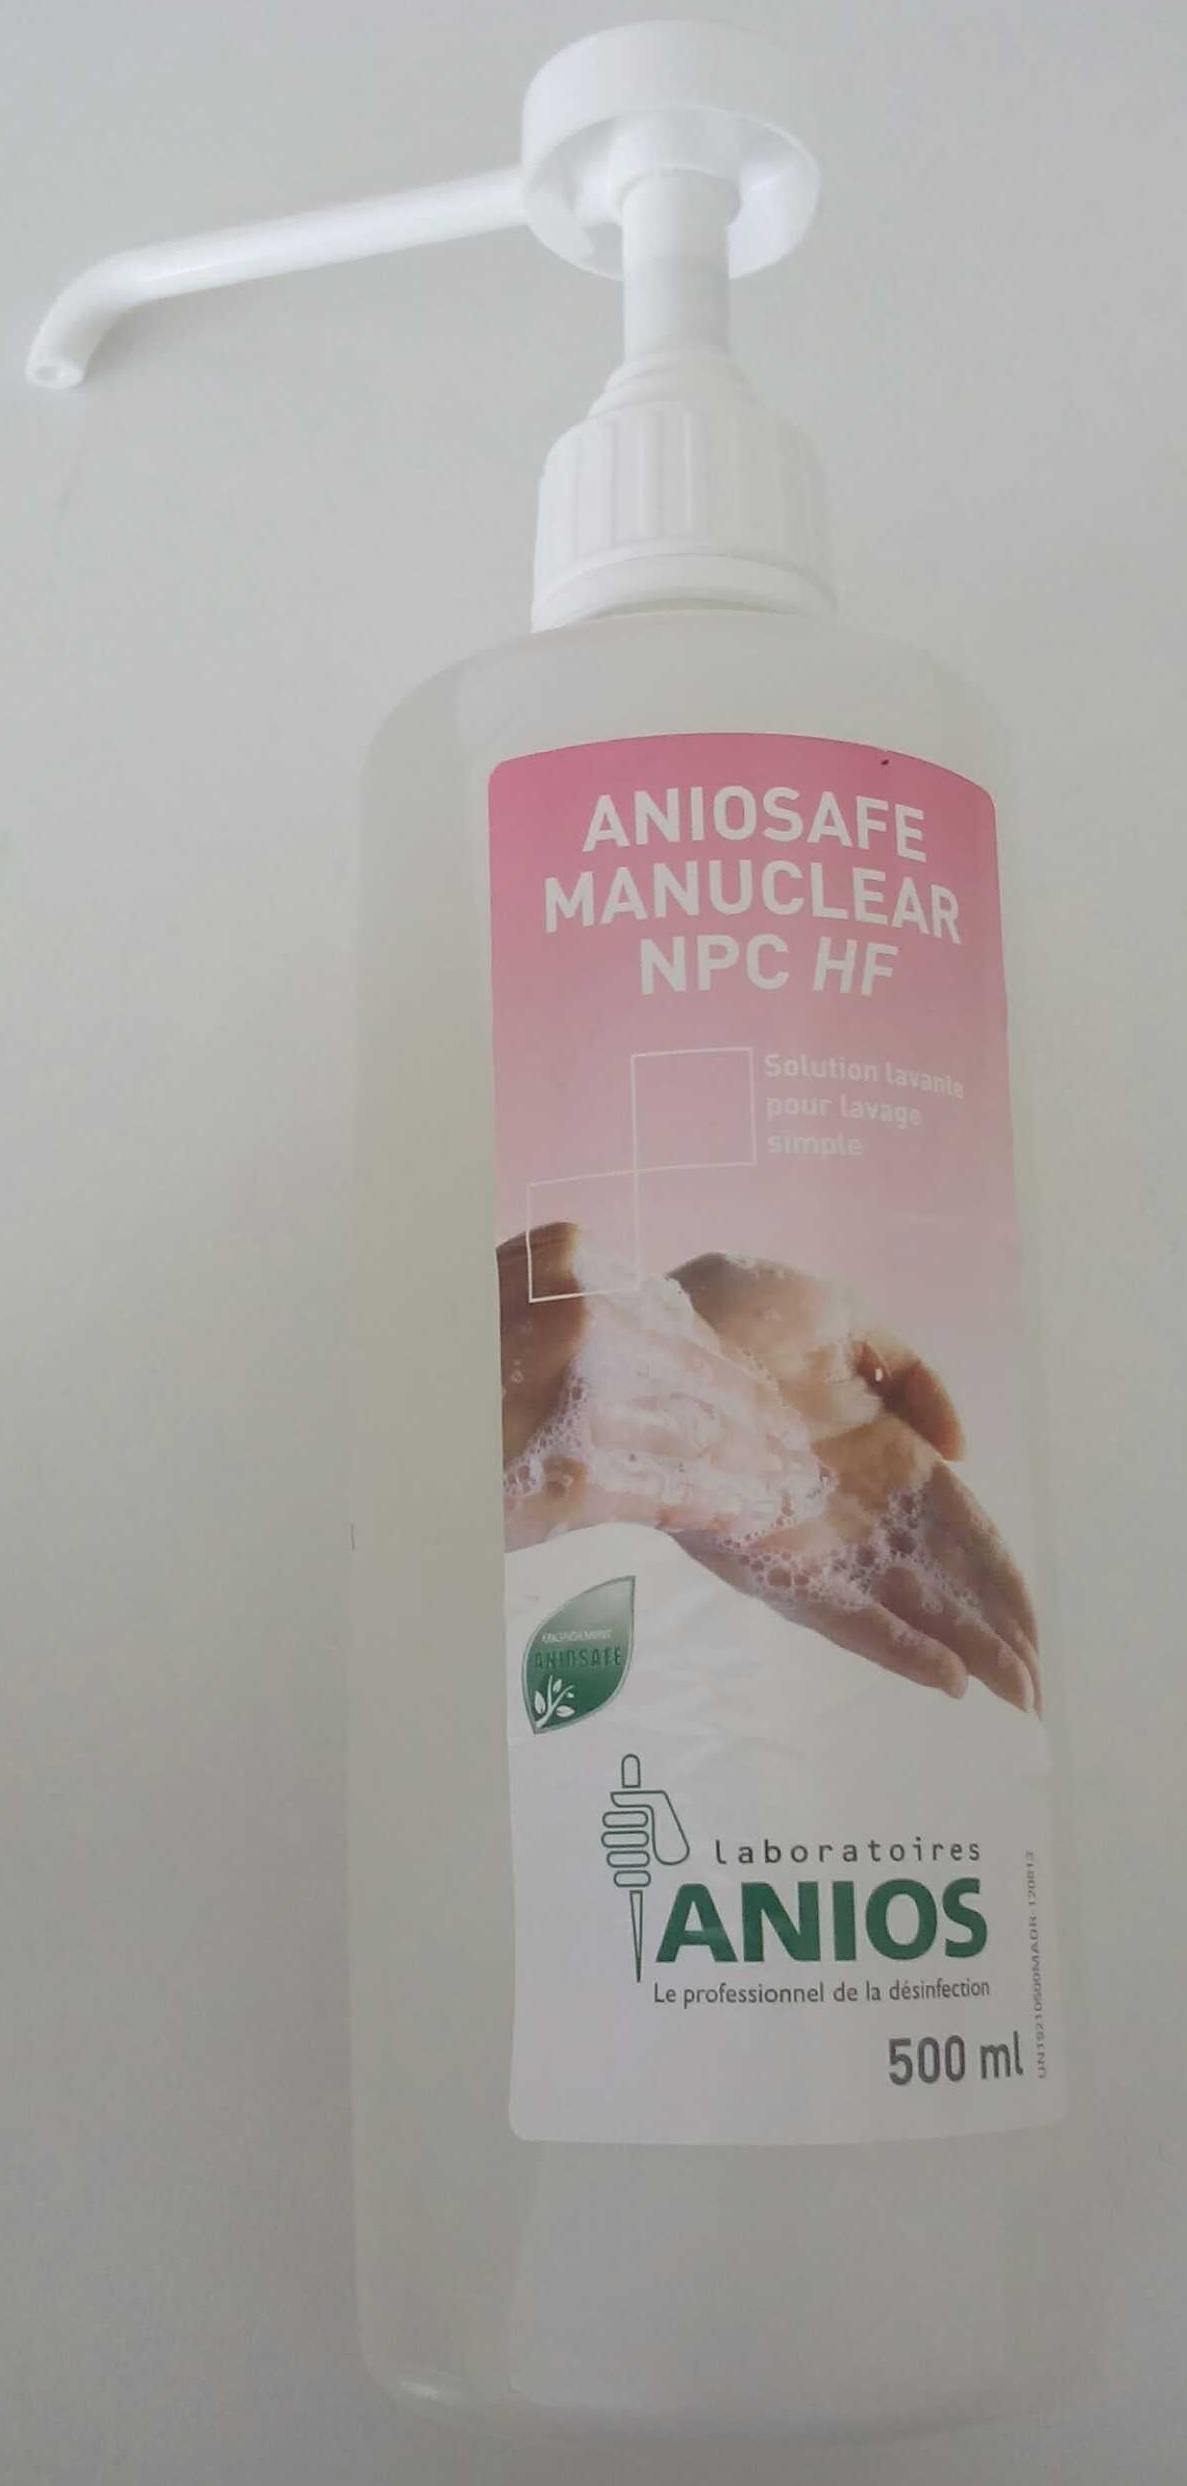 Aniosafe Manuclear NPC HF - Product - fr